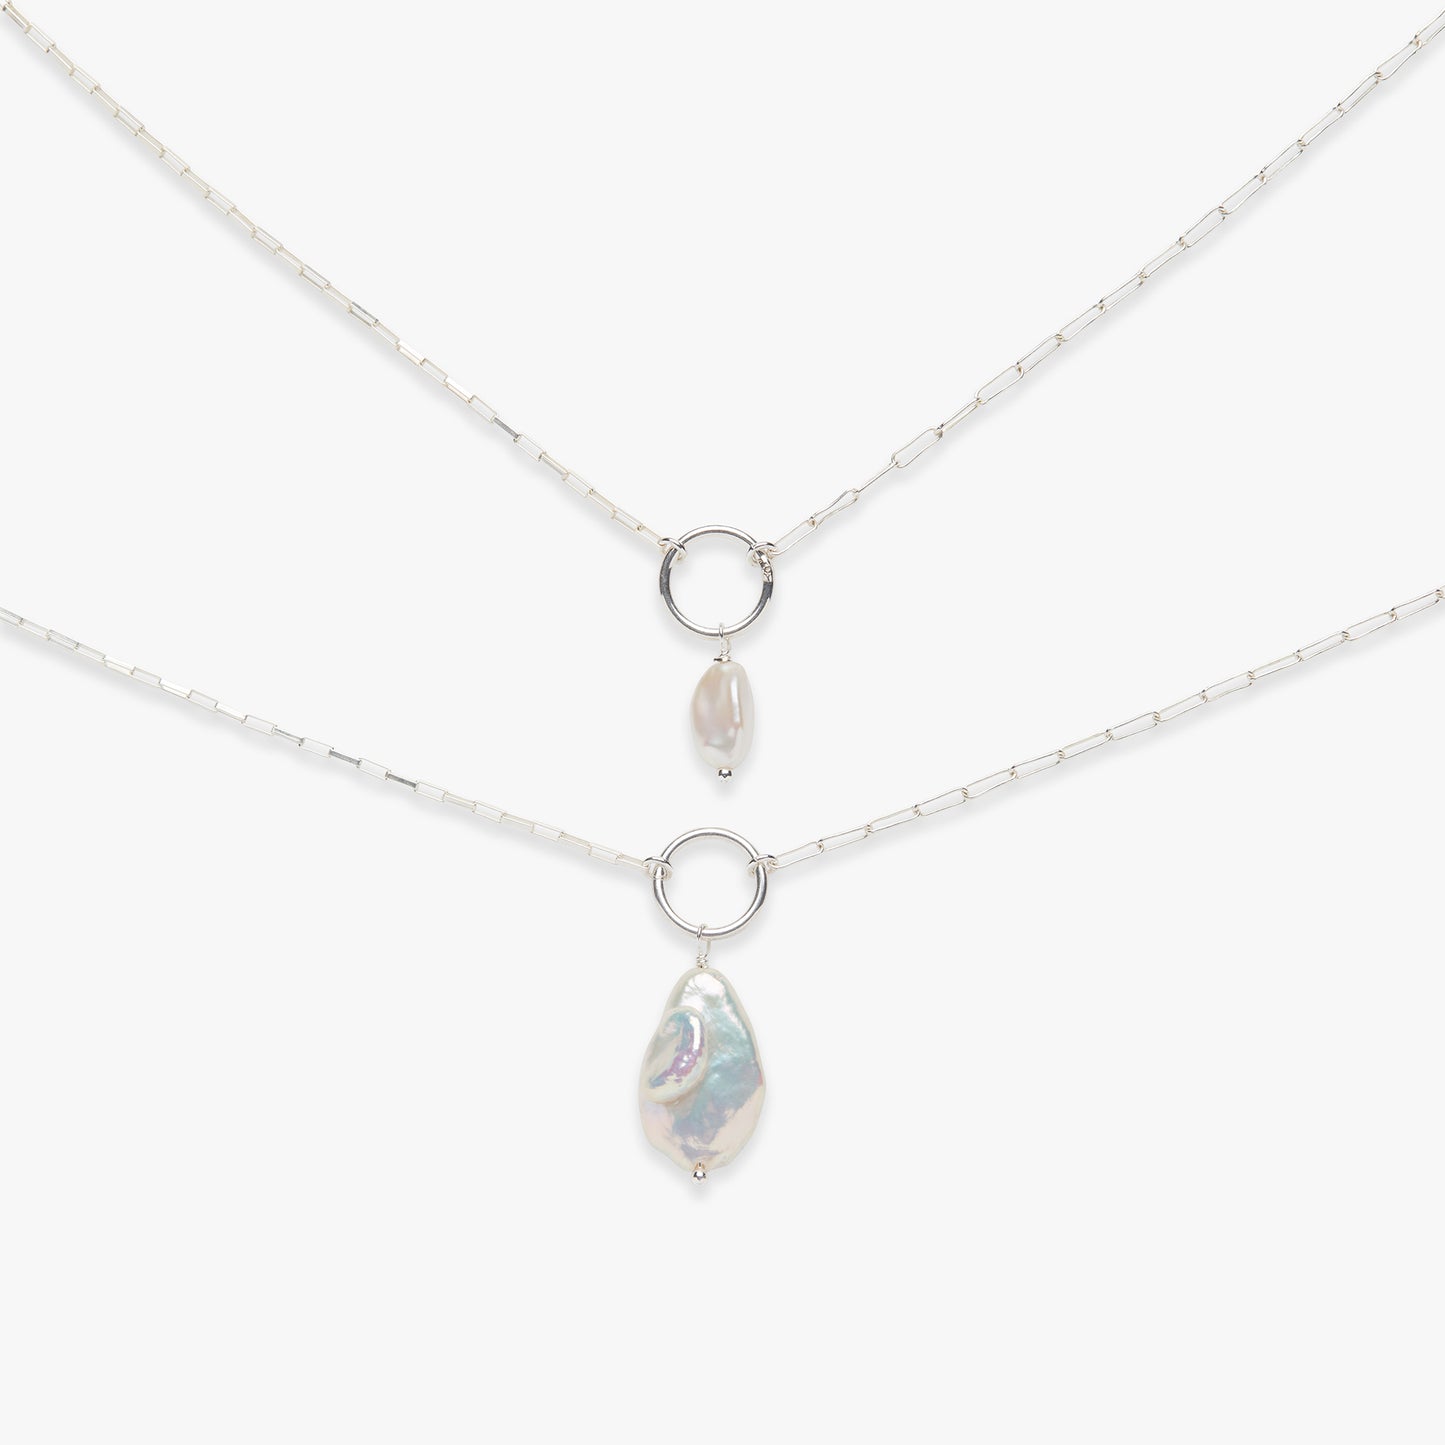 Baroque pearl necklace silver